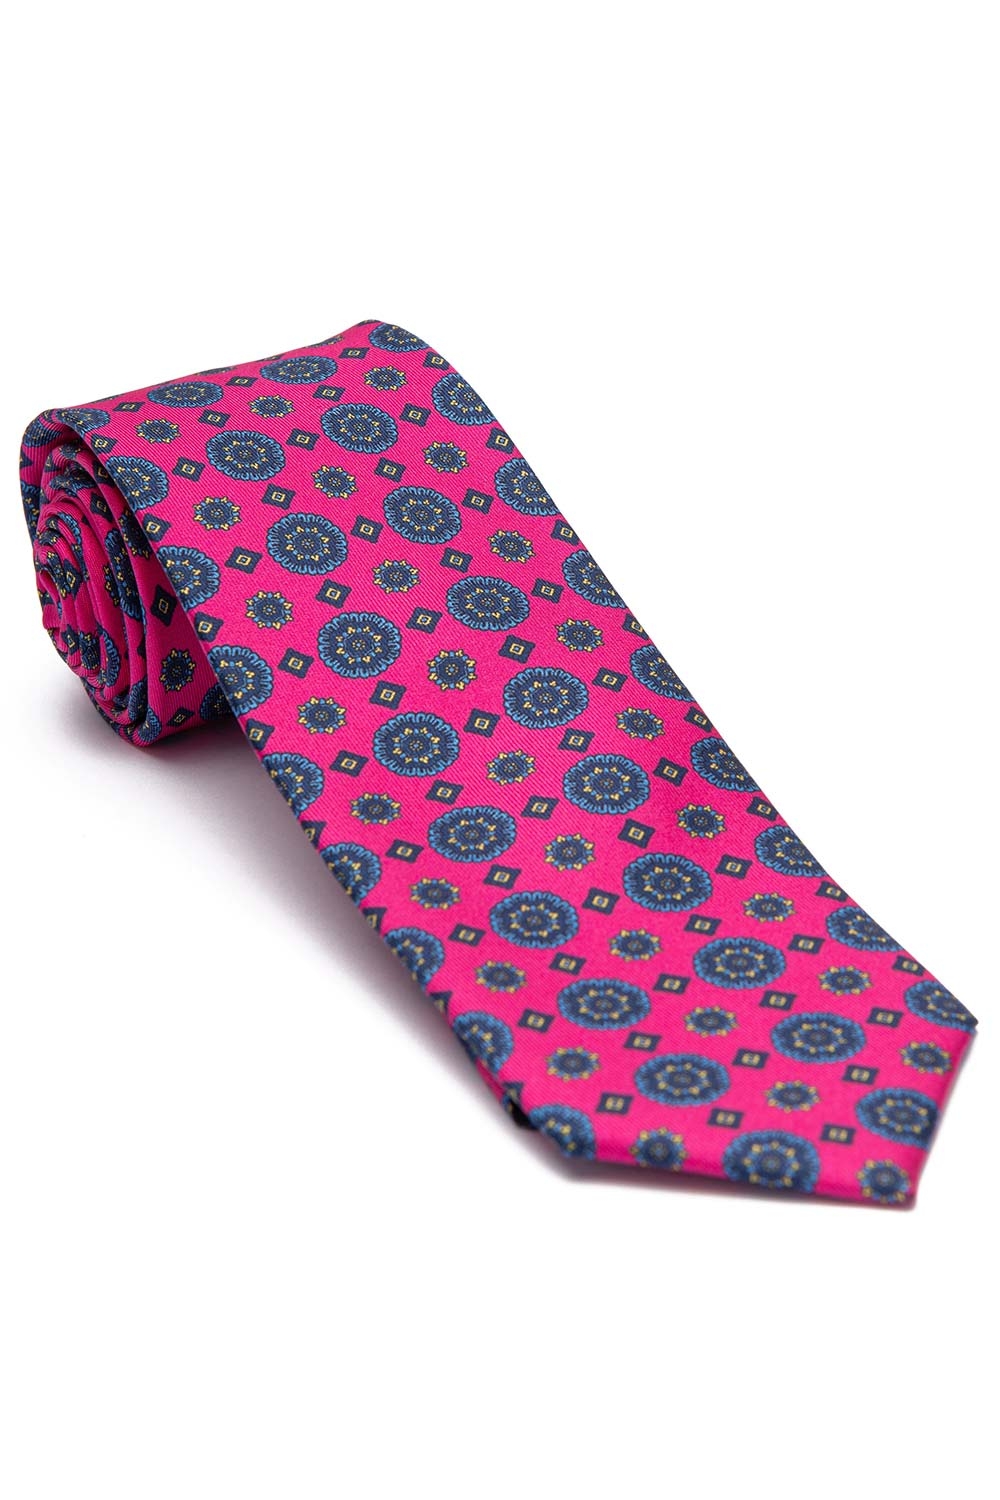 Cravata matase imprimata roz print geometric 0